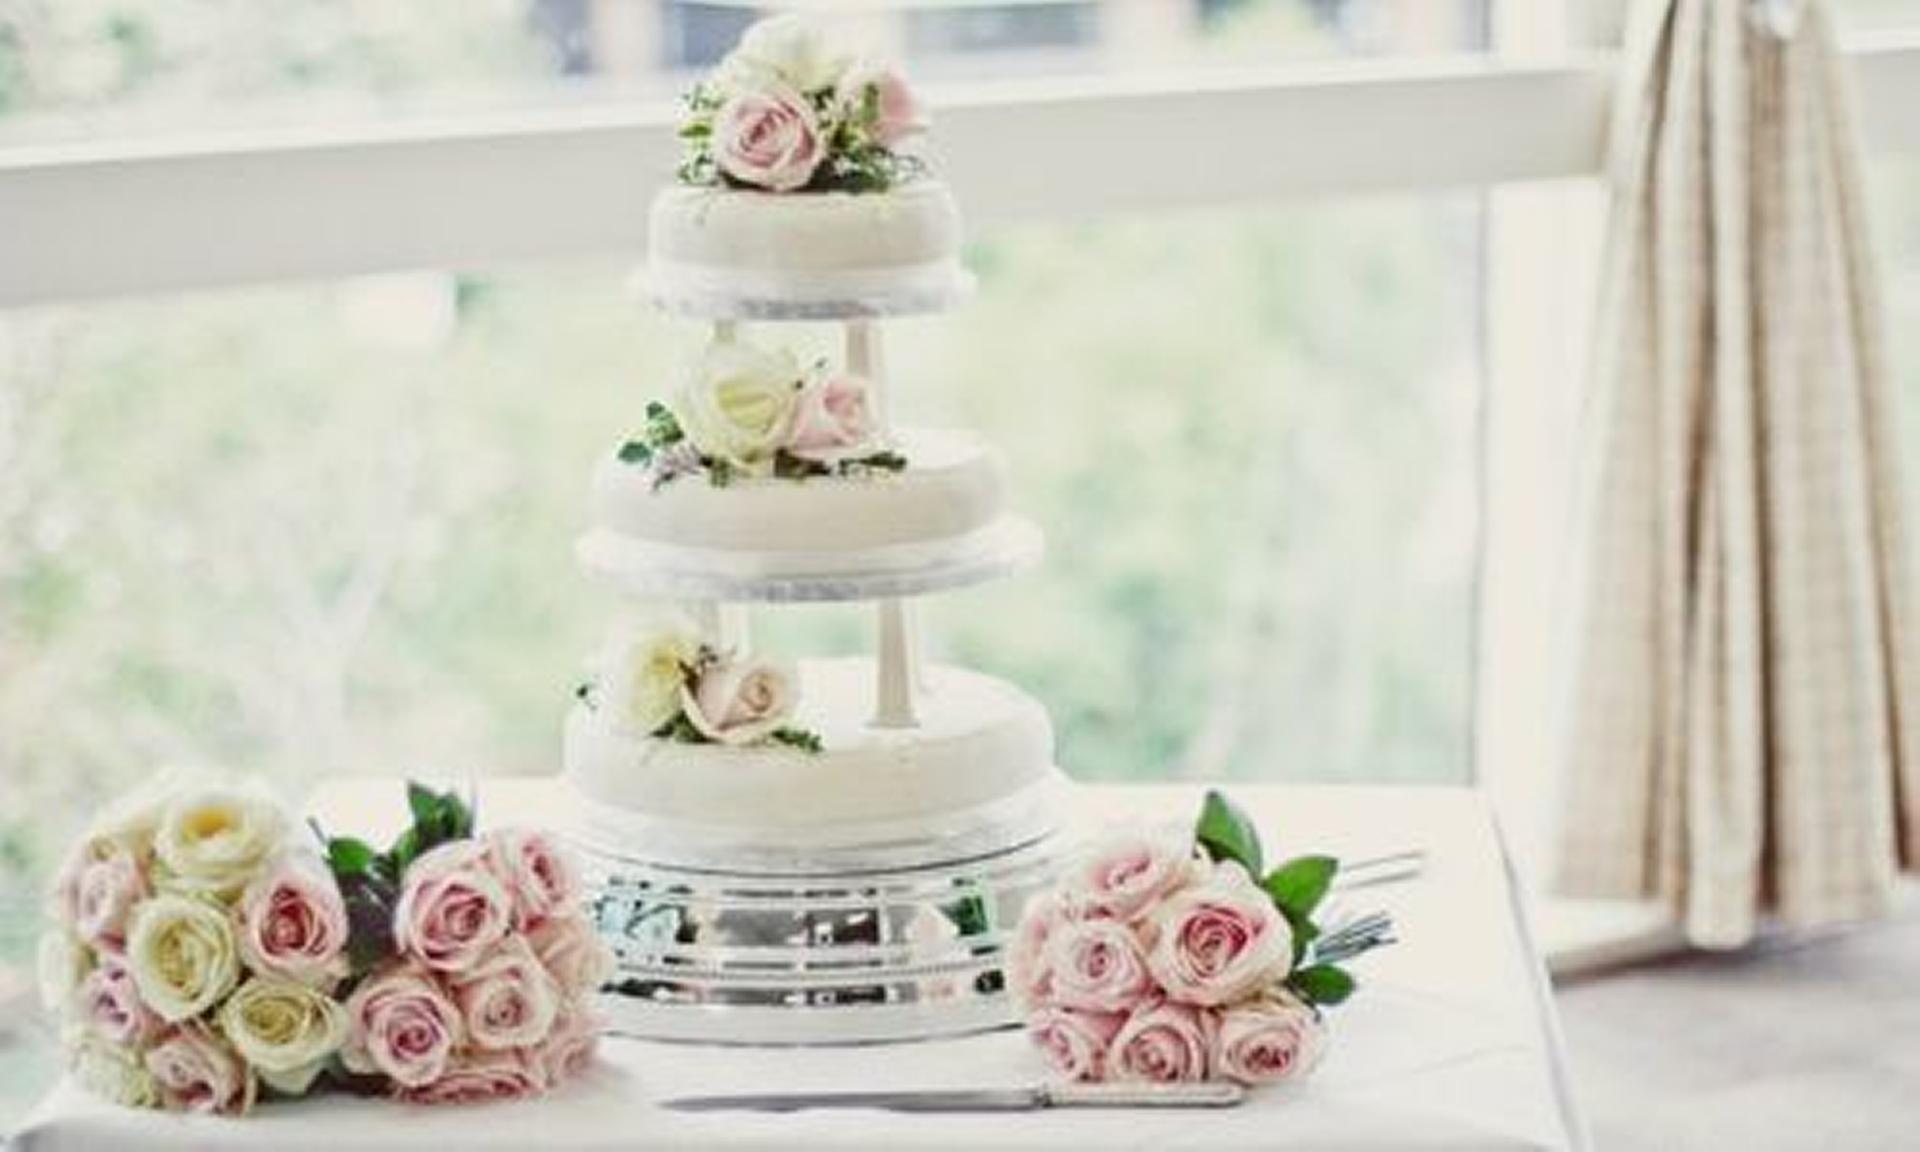 Wedding cakes prices southampton